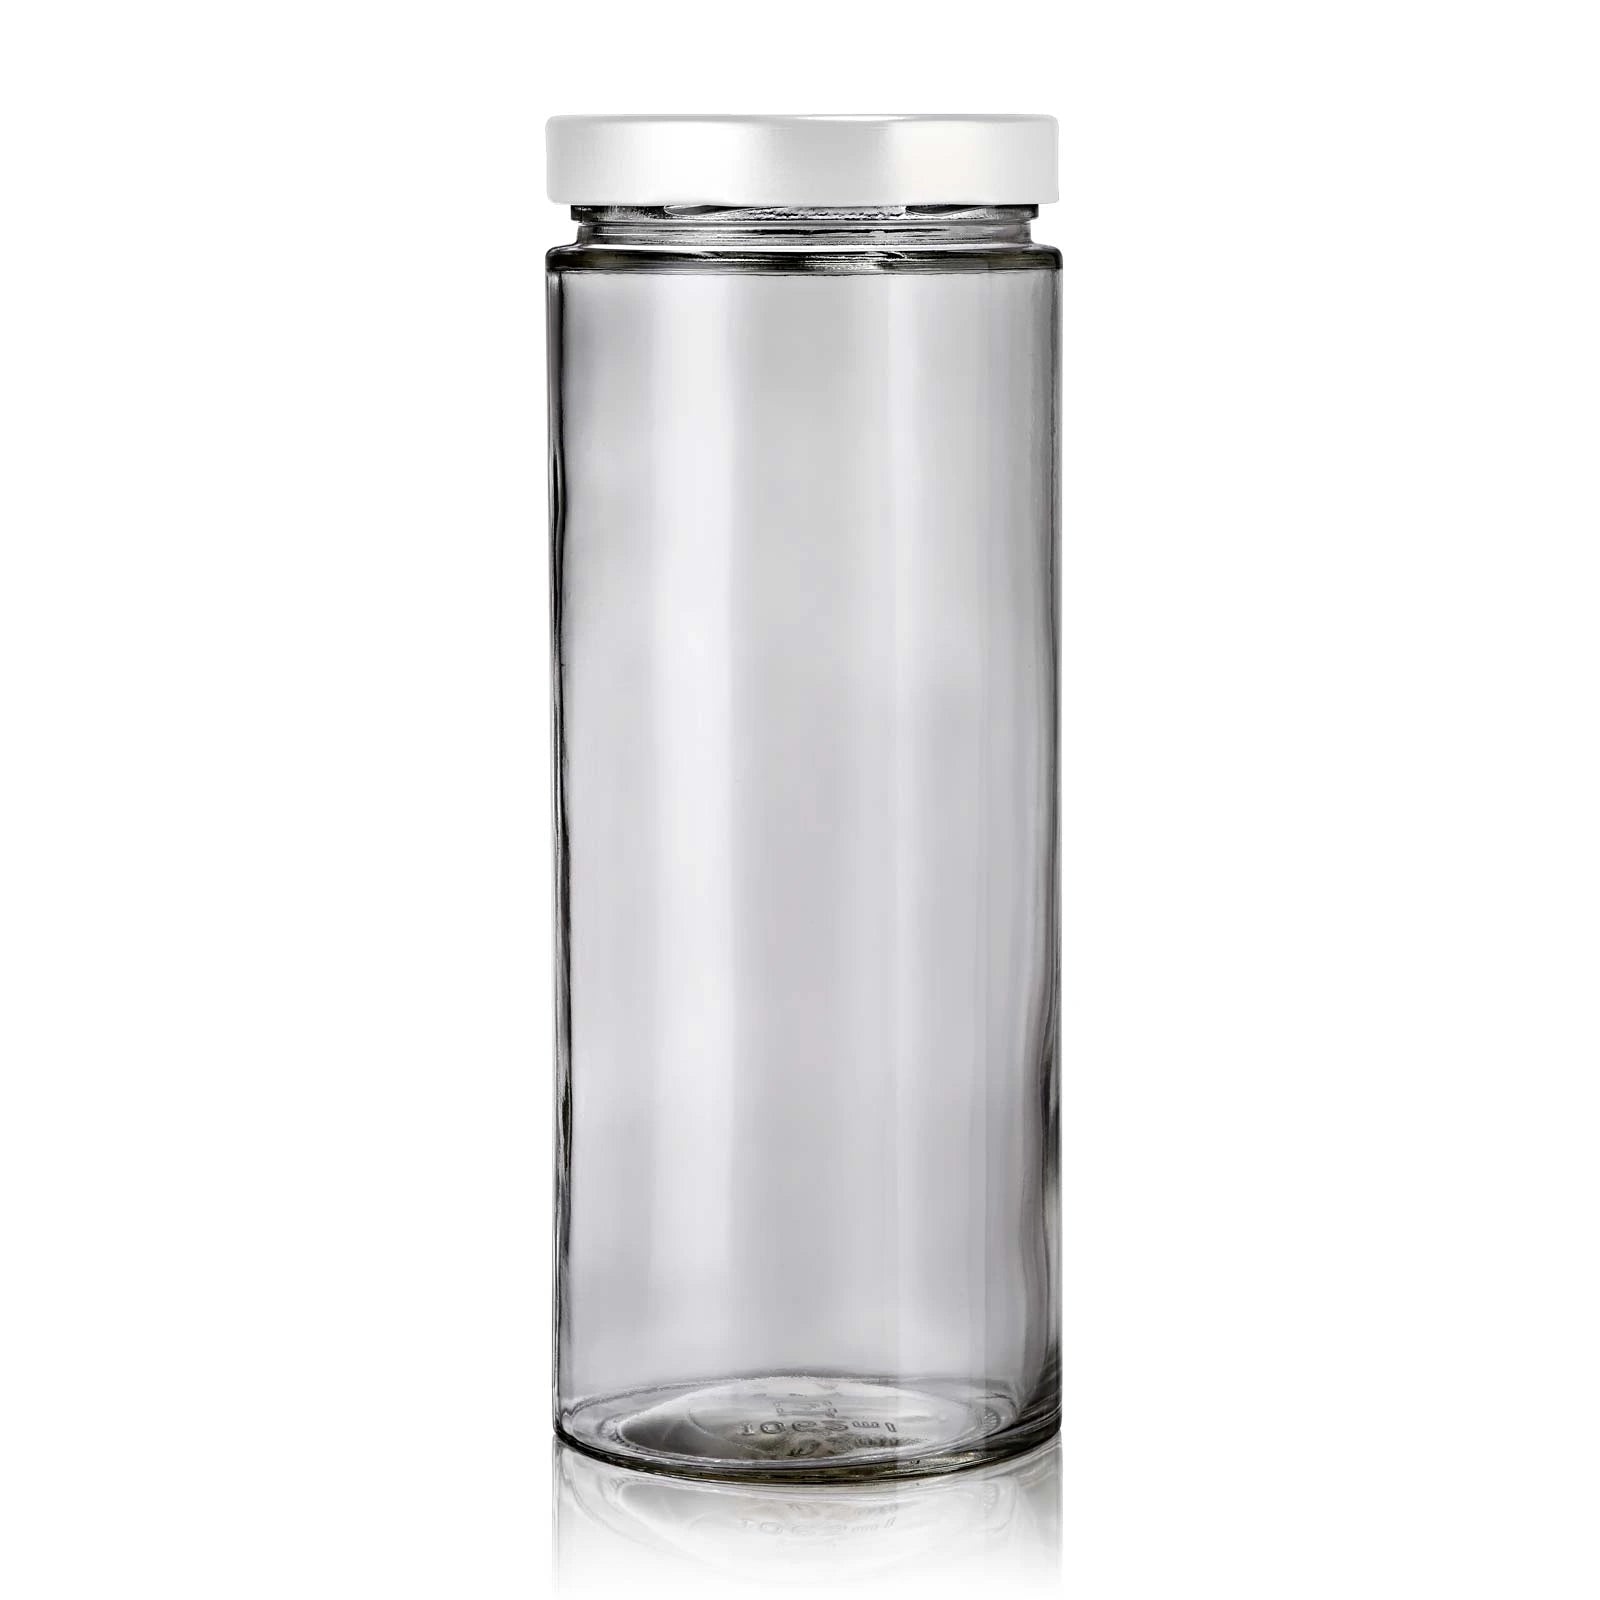 Grand bocal en verre recyclé de 1062 mL moderne avec couvercle blanc